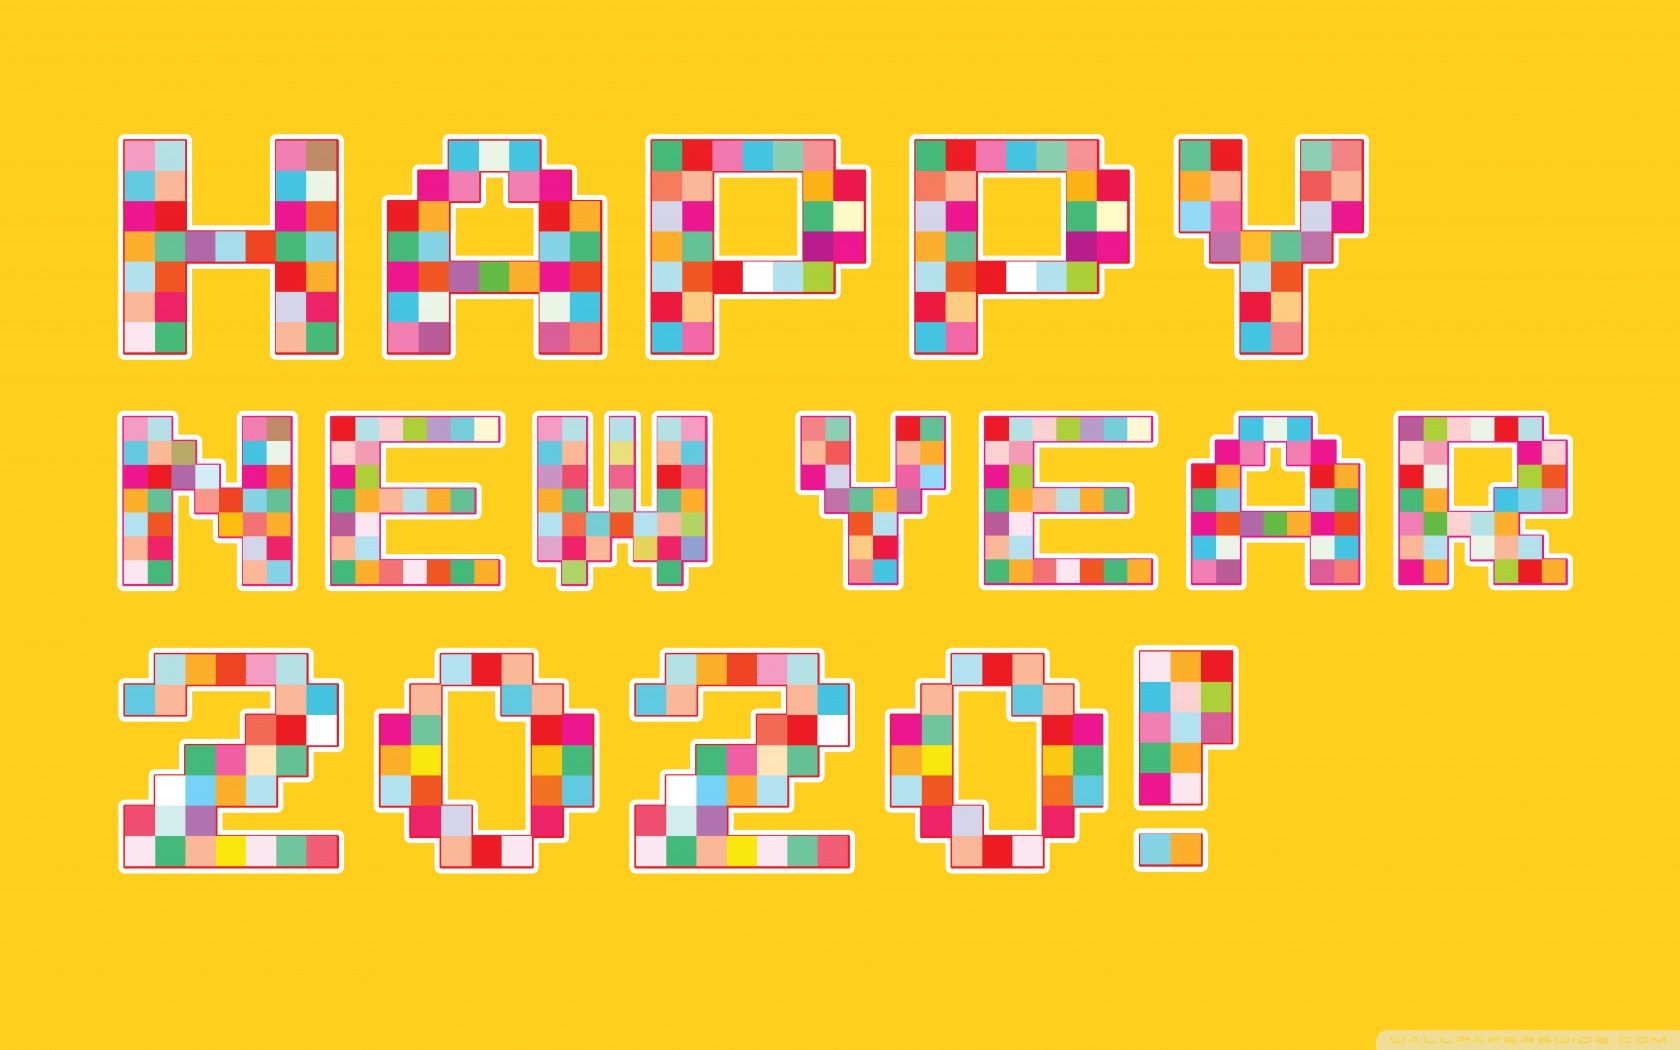 39+] Happy New Year 2020 Pixel Art Wallpapers